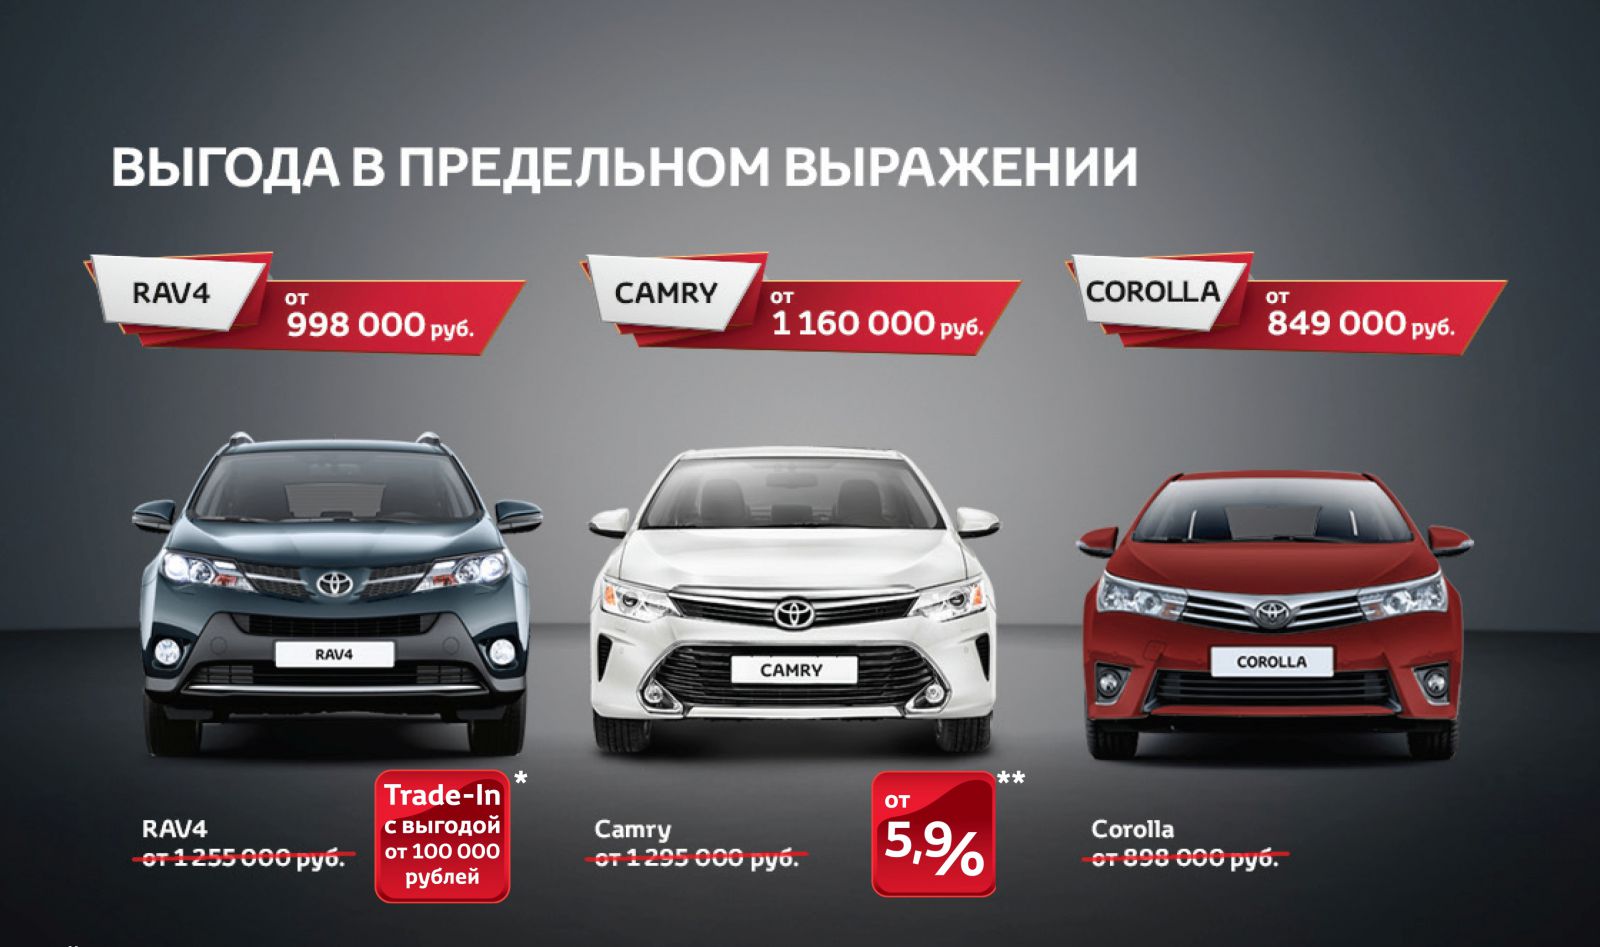 Тойота центр хабаровск модельный ряд. Акции Тойота. Реклама Тойота. Бестселлер Тойота. Toyota реклама 2012.